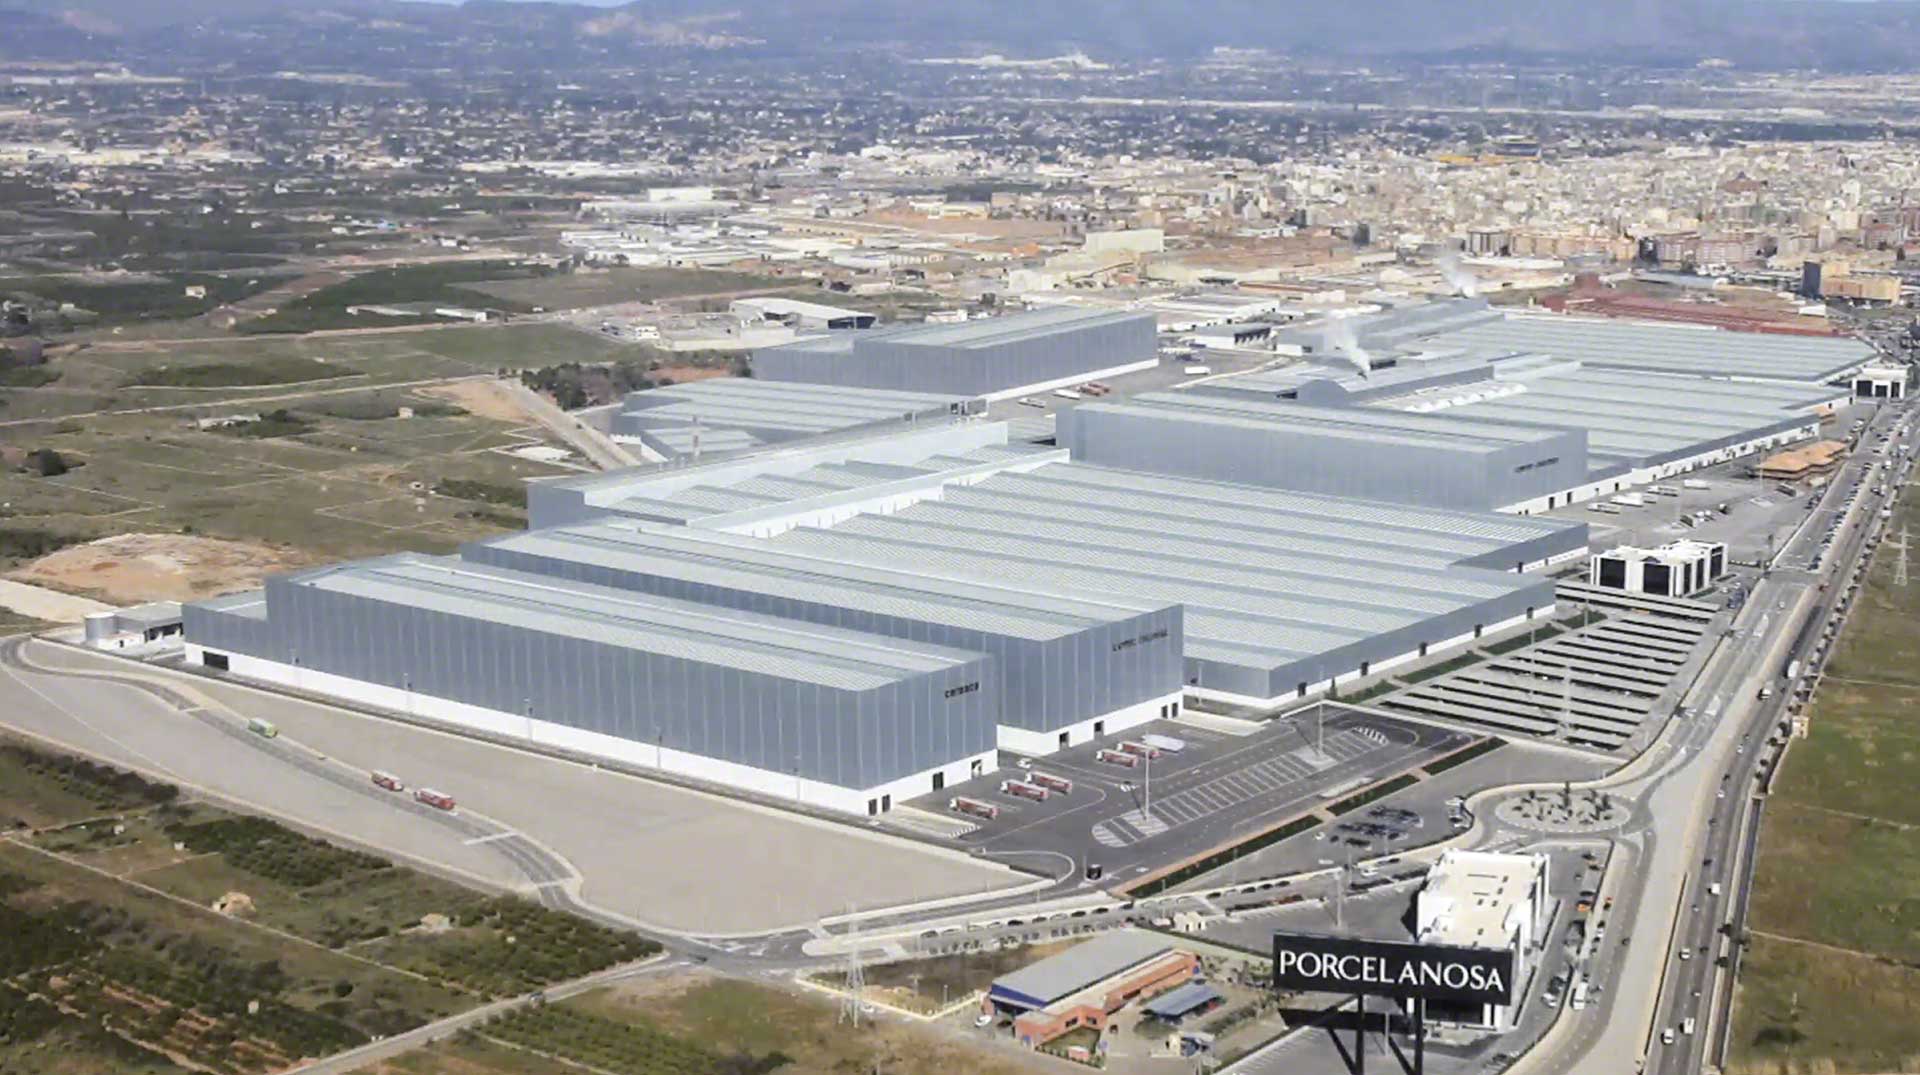 Das Logistikzentrum von Porcelanosa in Vila-real befindet sich an einem idealen Standort für die schnelle Lieferung der Produkte nach ganz Spanien